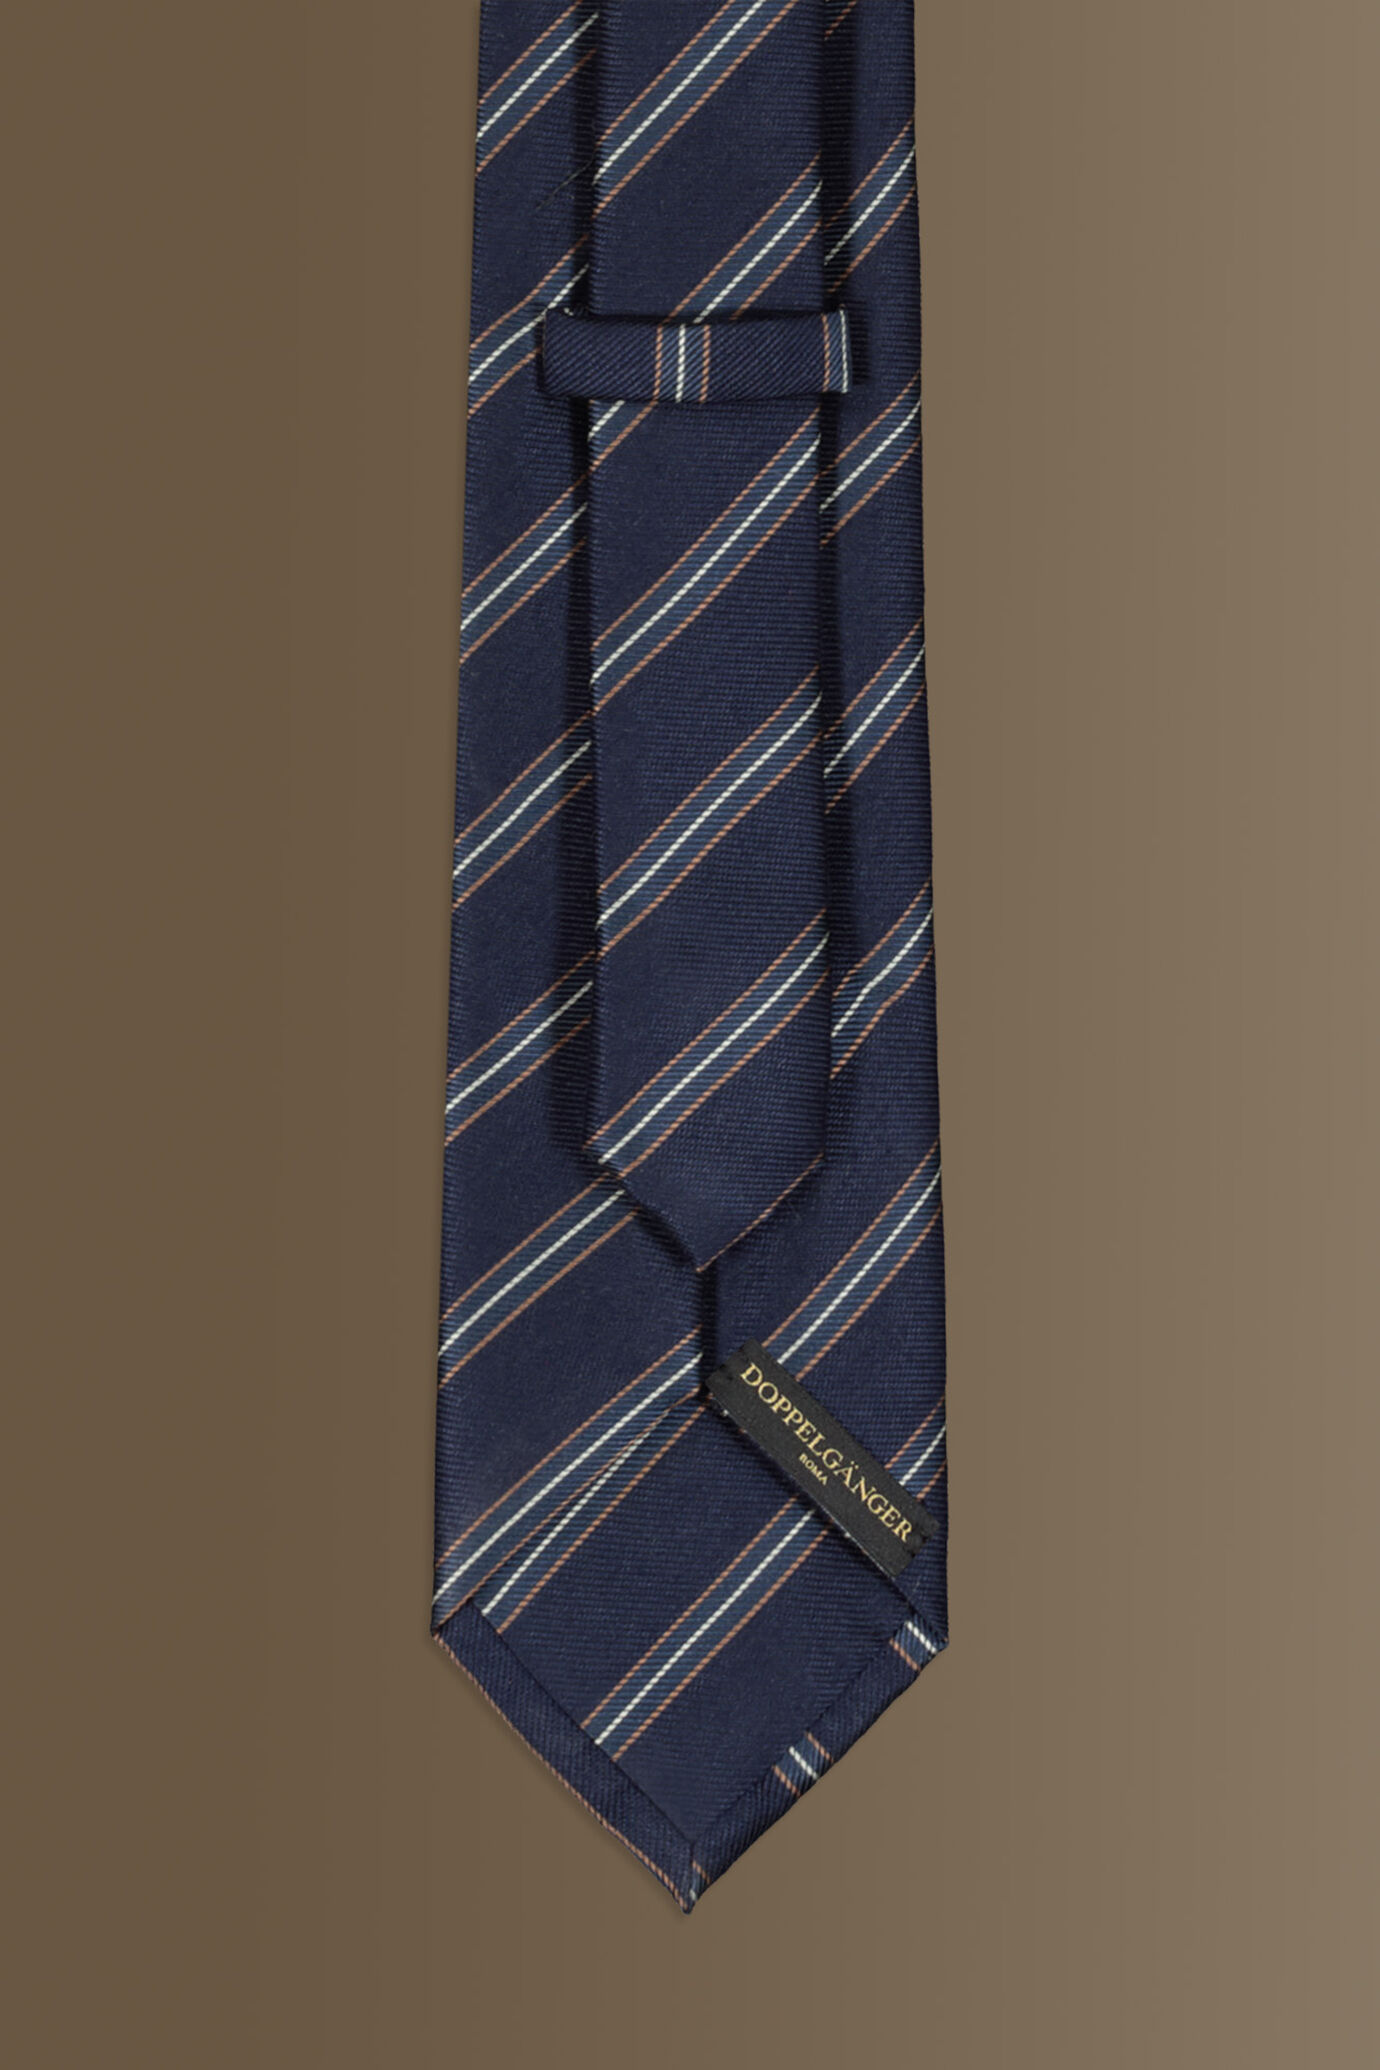 Cravatta uomo dark blu fantasia regimental in misto bamboo image number 1